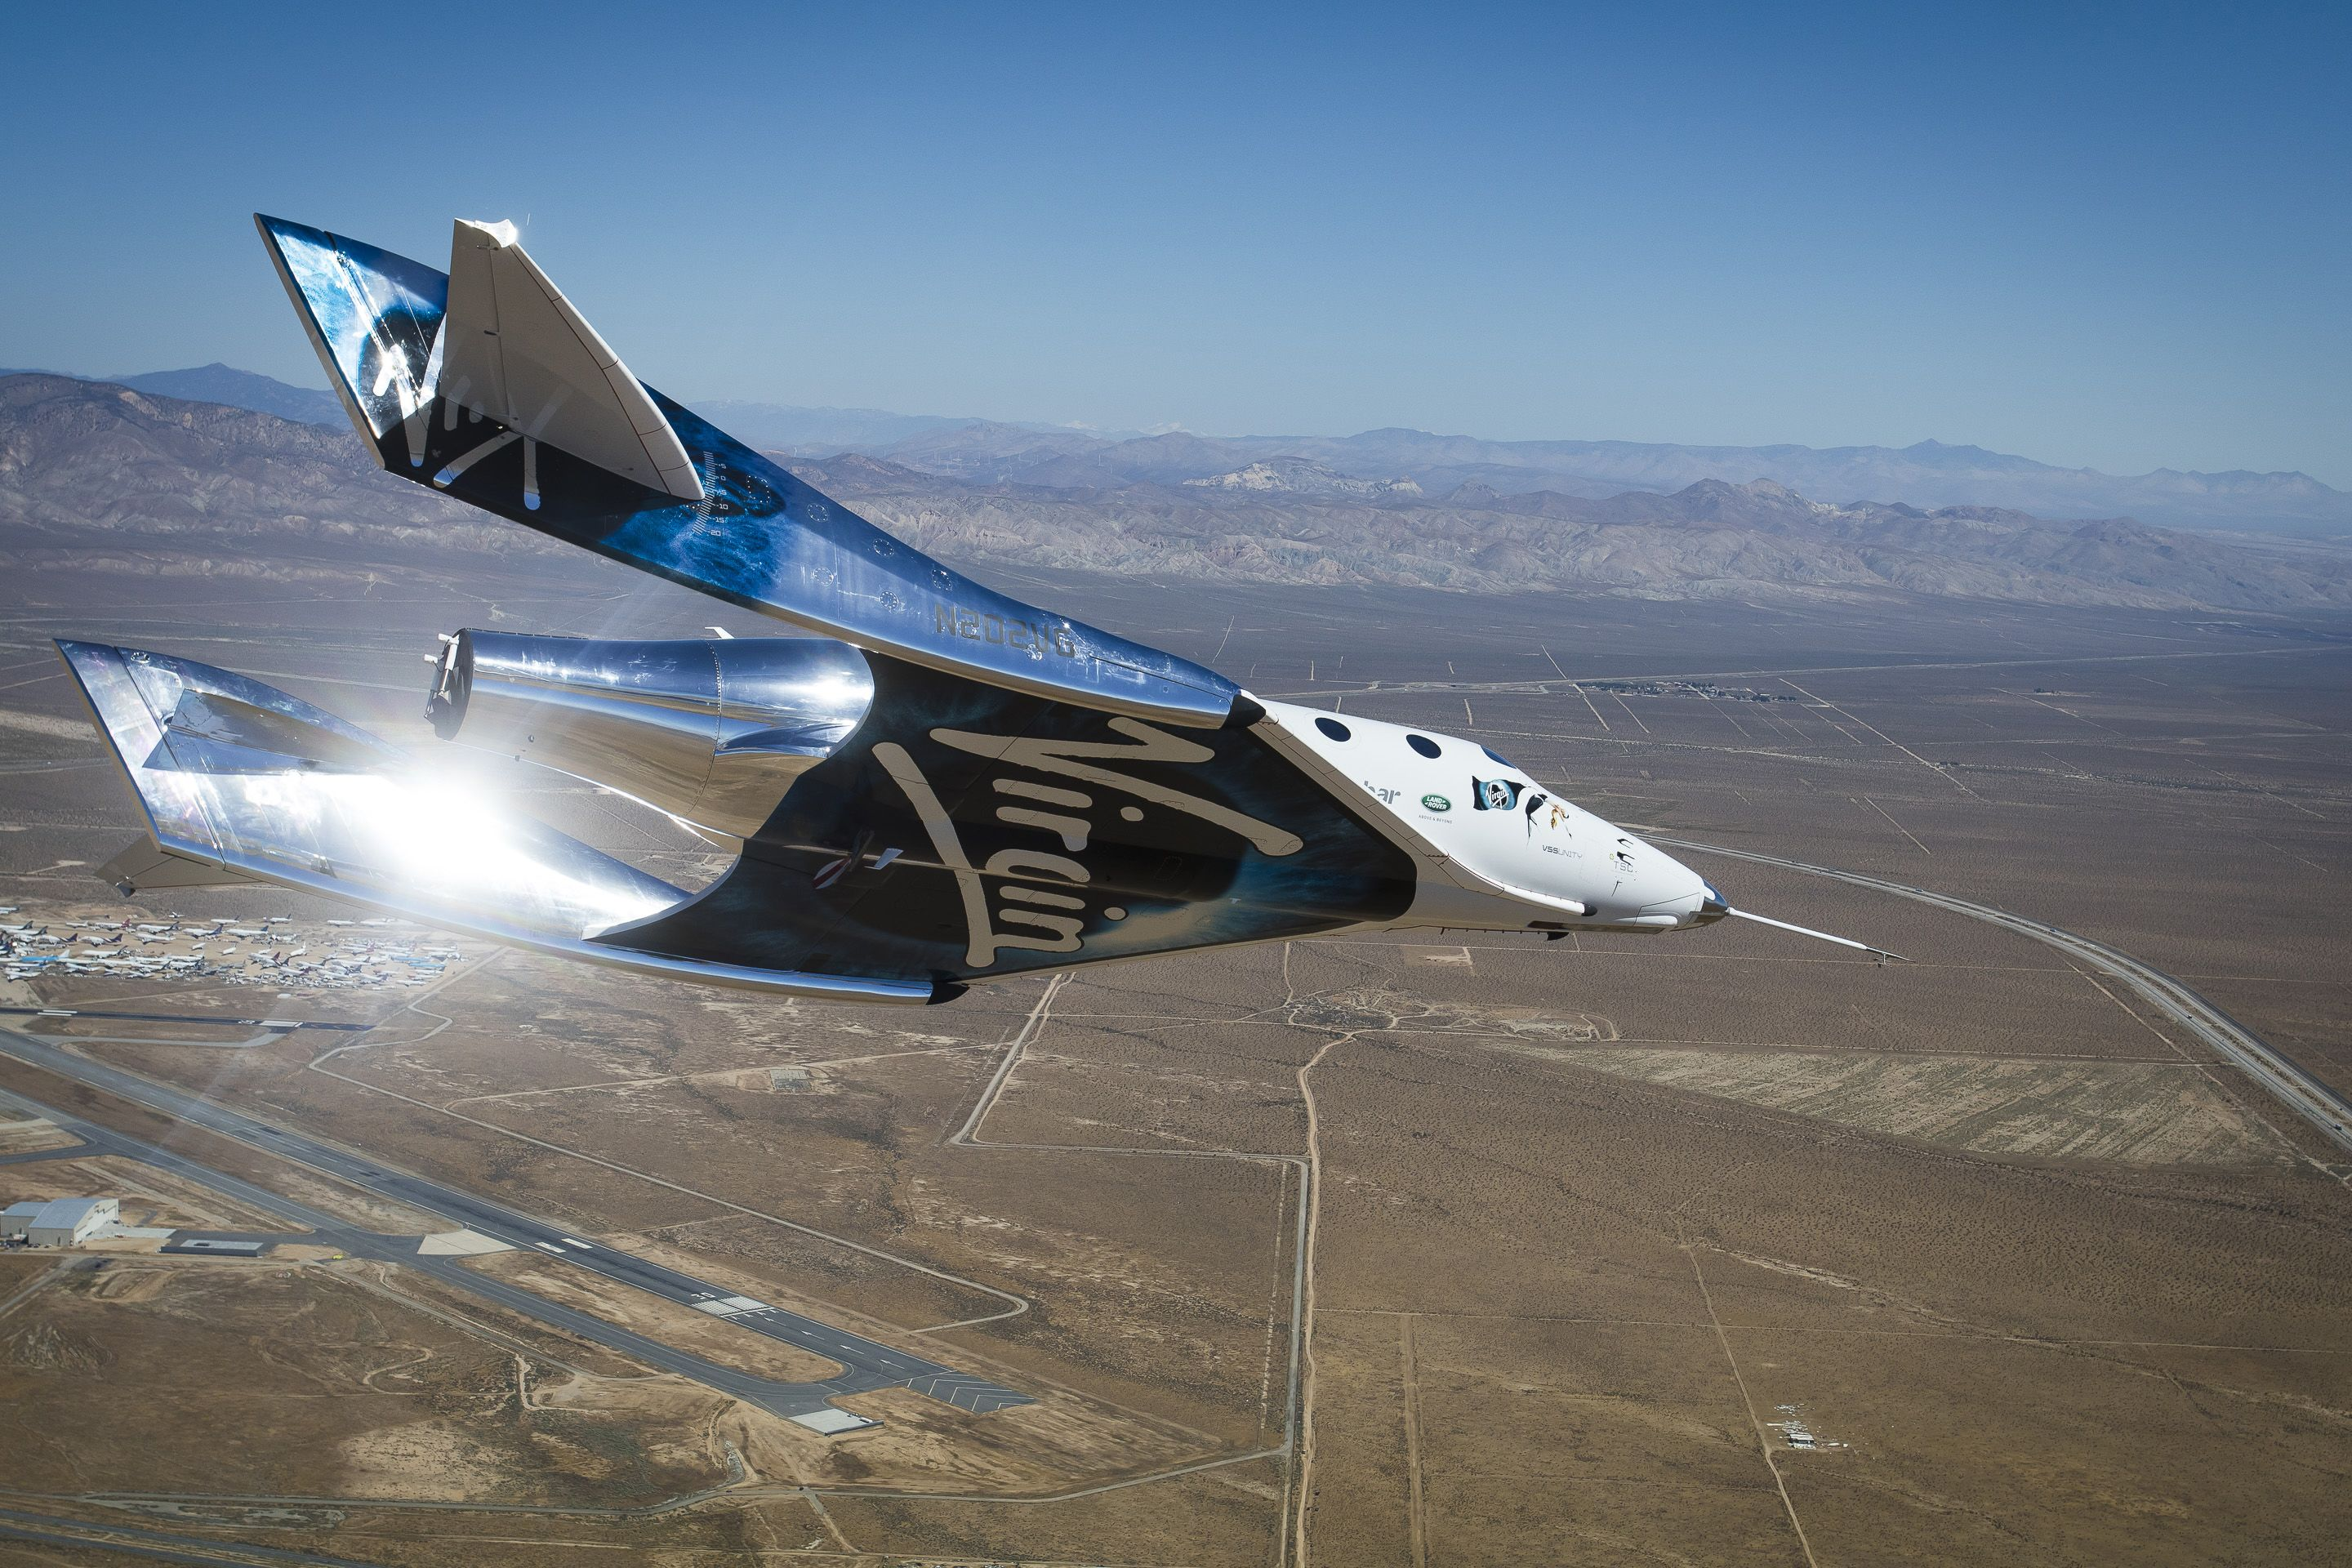 پرواز به فضا – آزمایش SpaceShipTwo توسط Virgin Galactic در هفته جاری